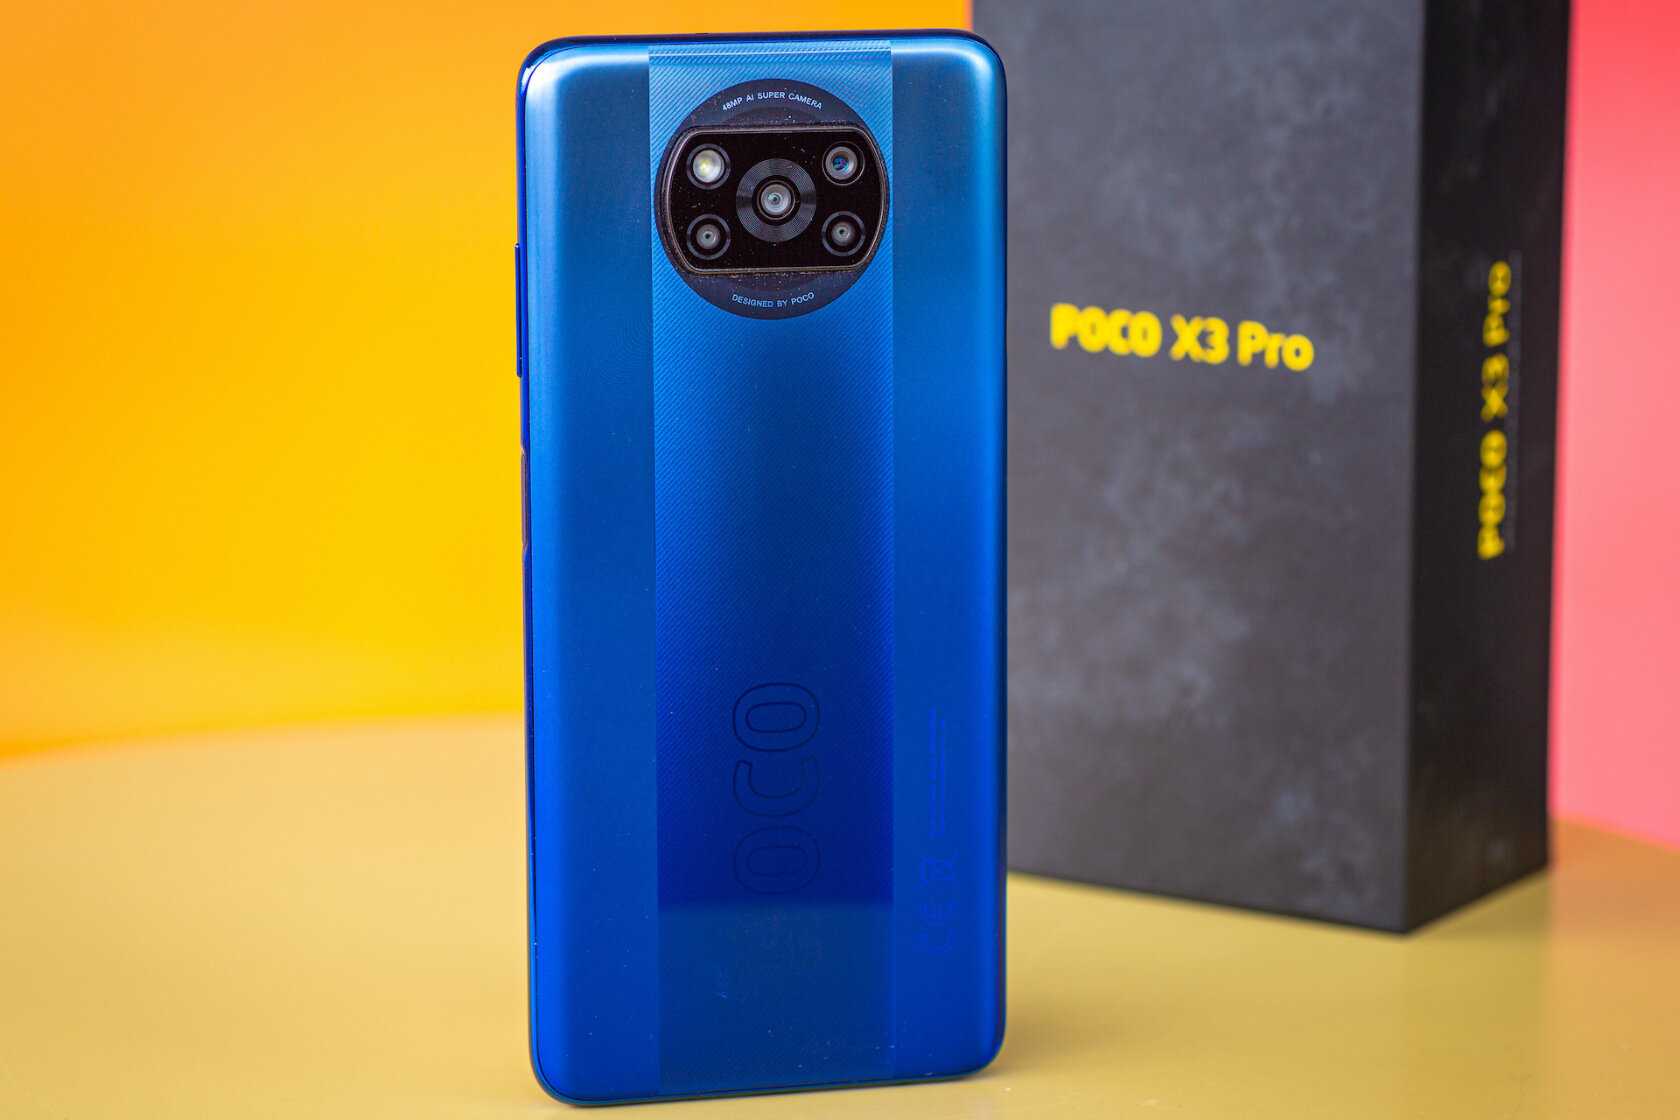 До начала лета свою версию идеального и дешевого смартфона предложит еще один производитель. Poco X3 Pro с дисплеем AMOLED 120 Гц и батареей на 5160 мАч будет представлен в марте.